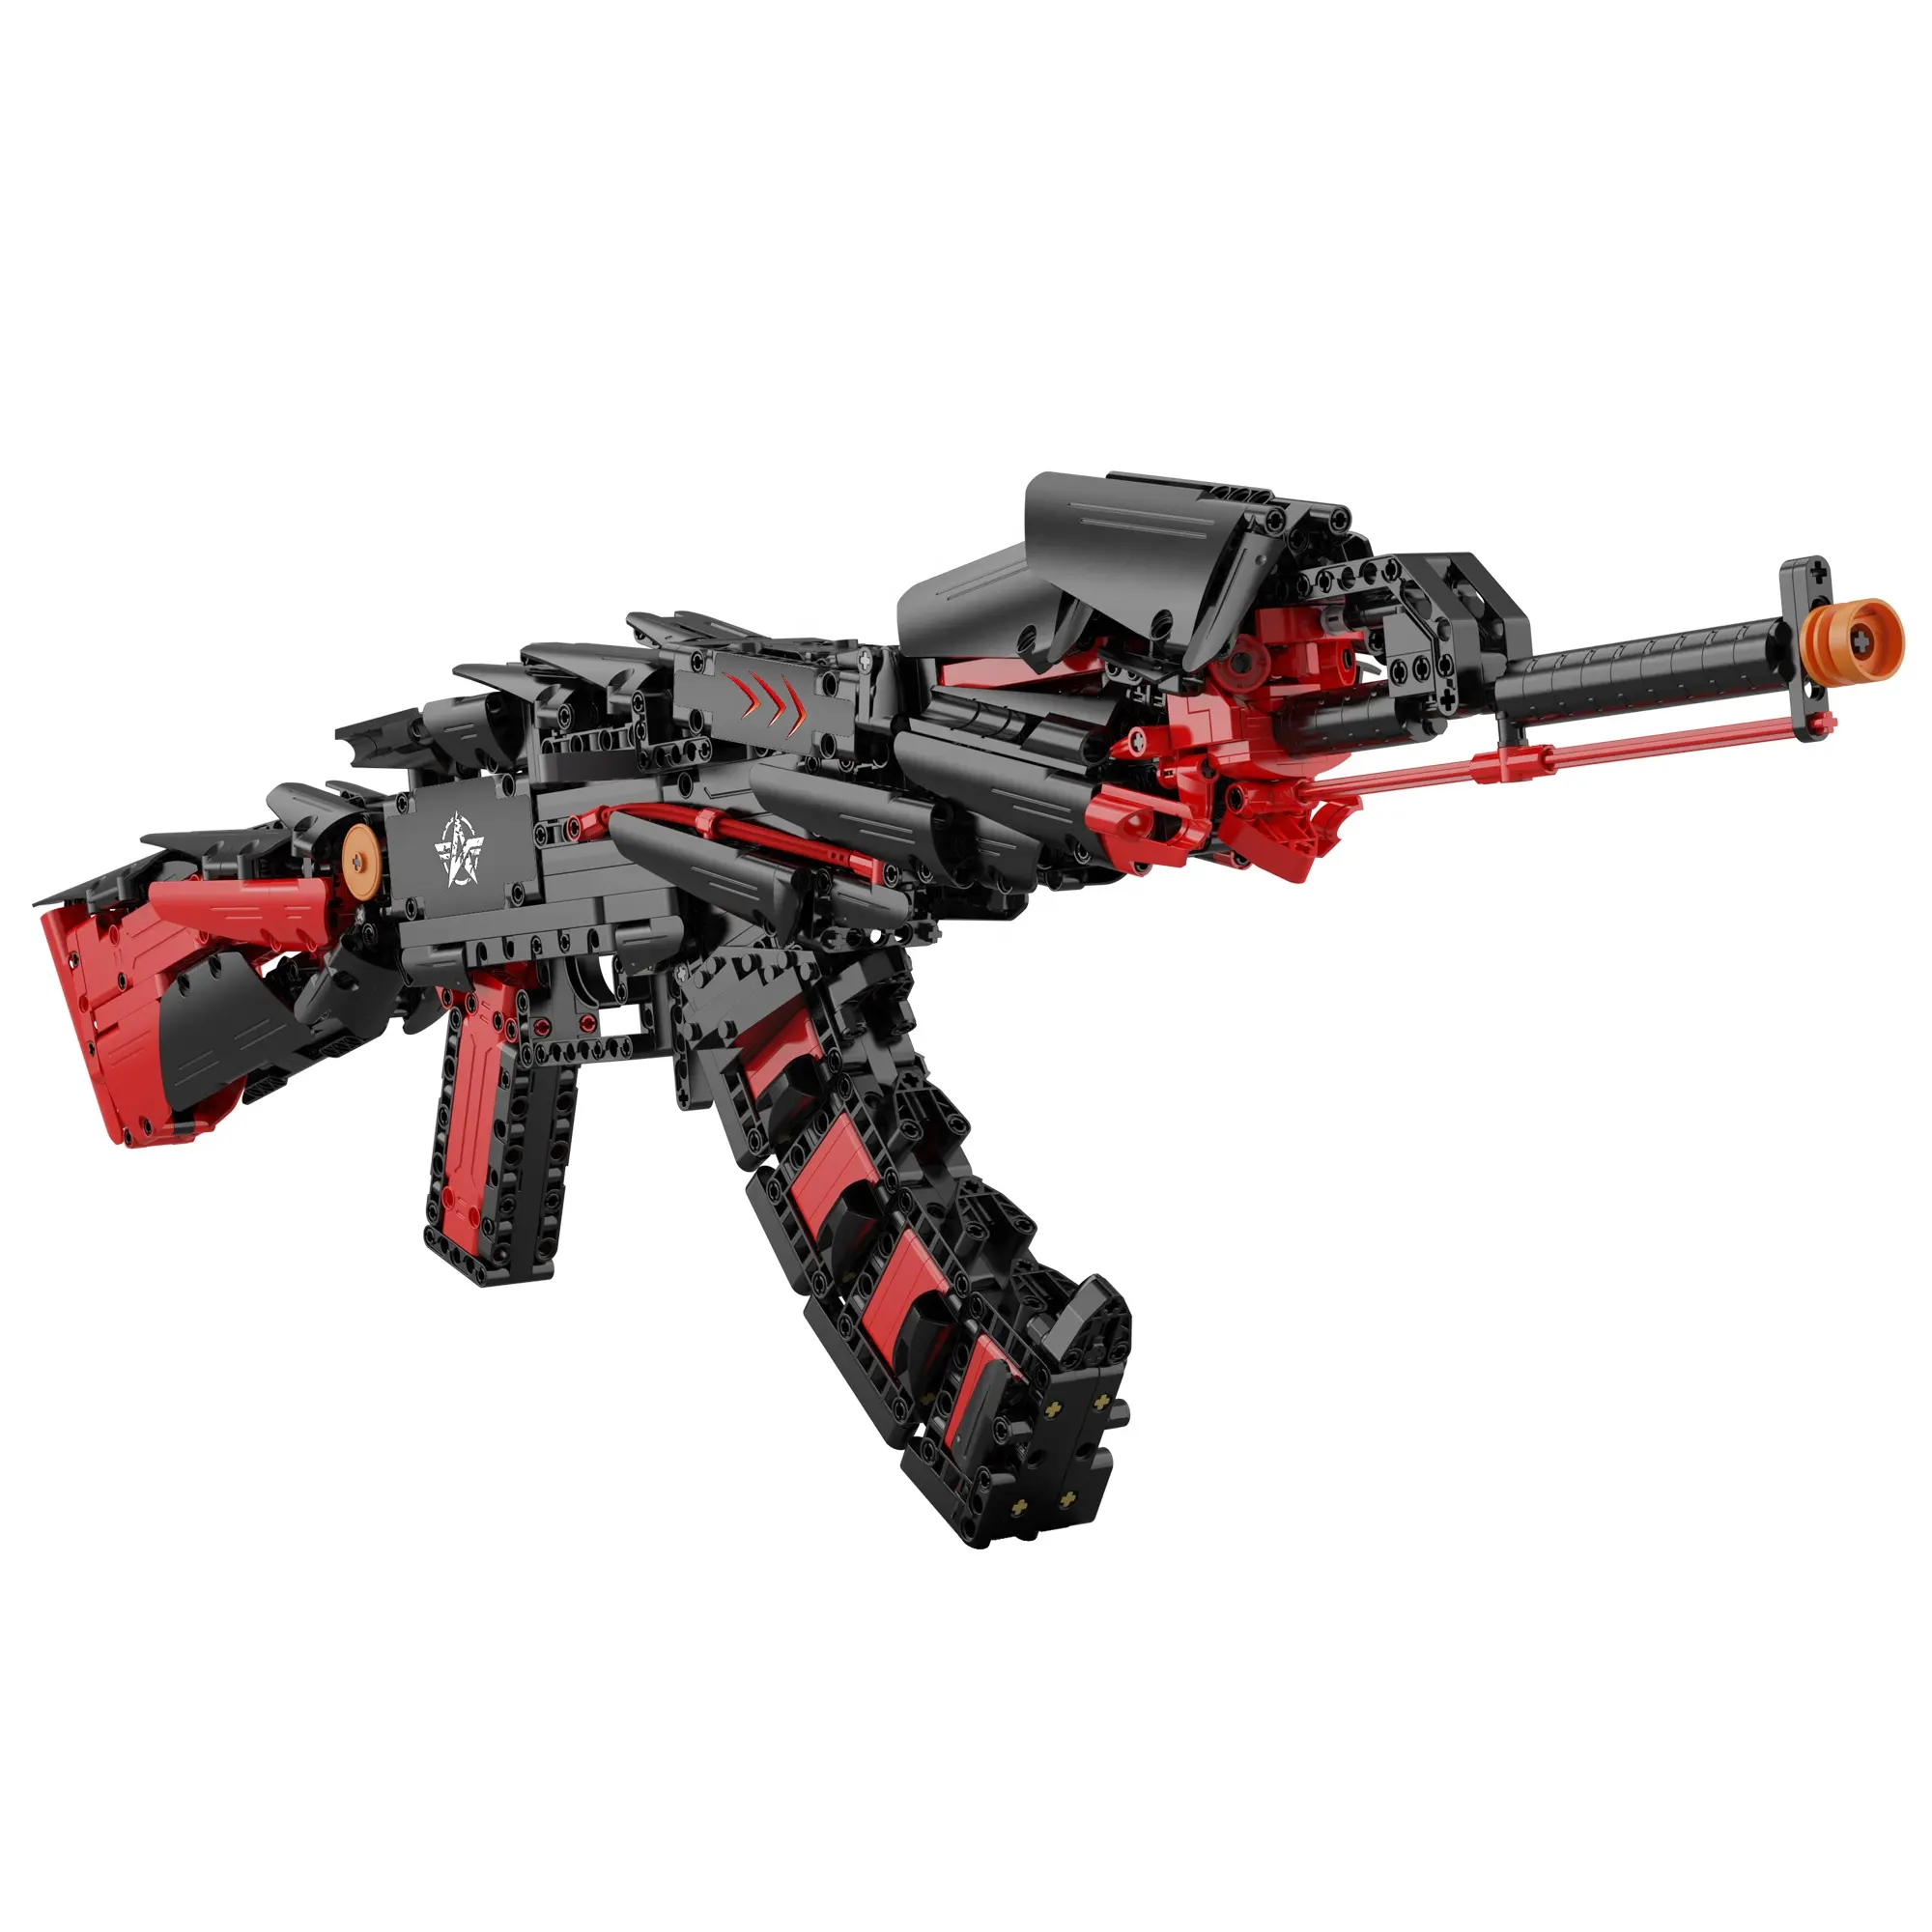 1:1 CADA C81054 황야 액션 무기 군사 게임 나이프 총 레고 빌딩 블록 1048pcs 벽돌 장난감 모델 총